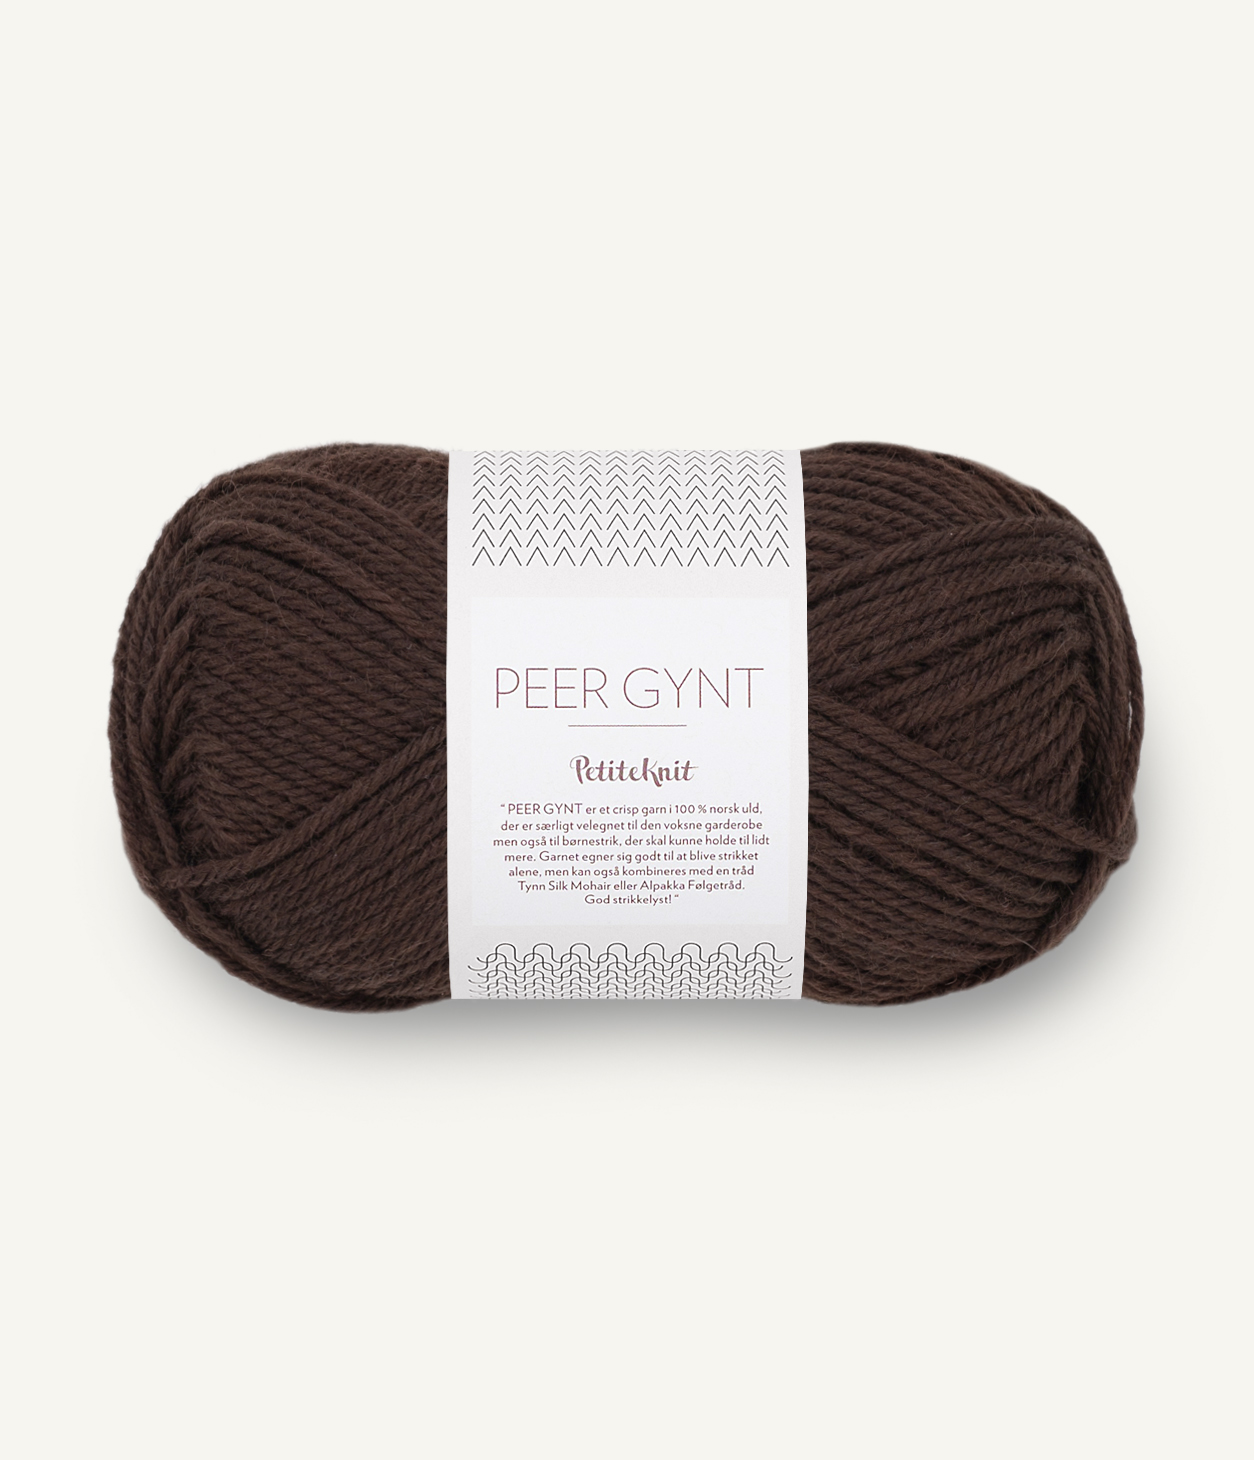 PetiteKnit Peer Gynt Cacao 3091